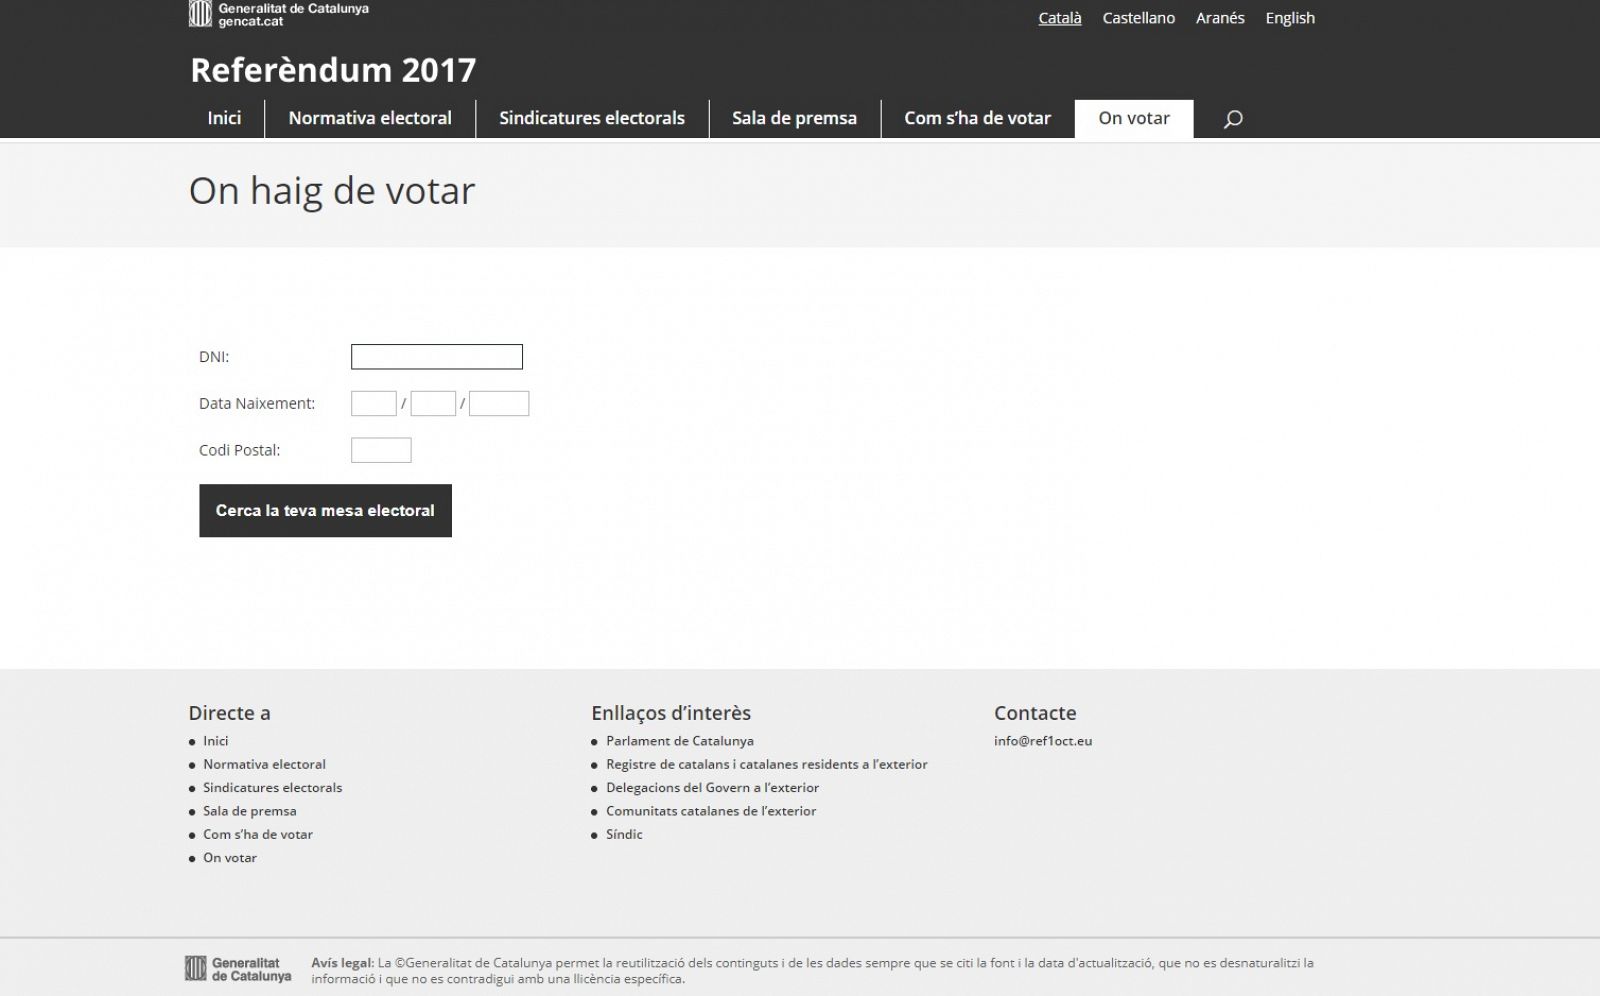 Imagen de la web que ofrece el listado de locales para votar el 1-O